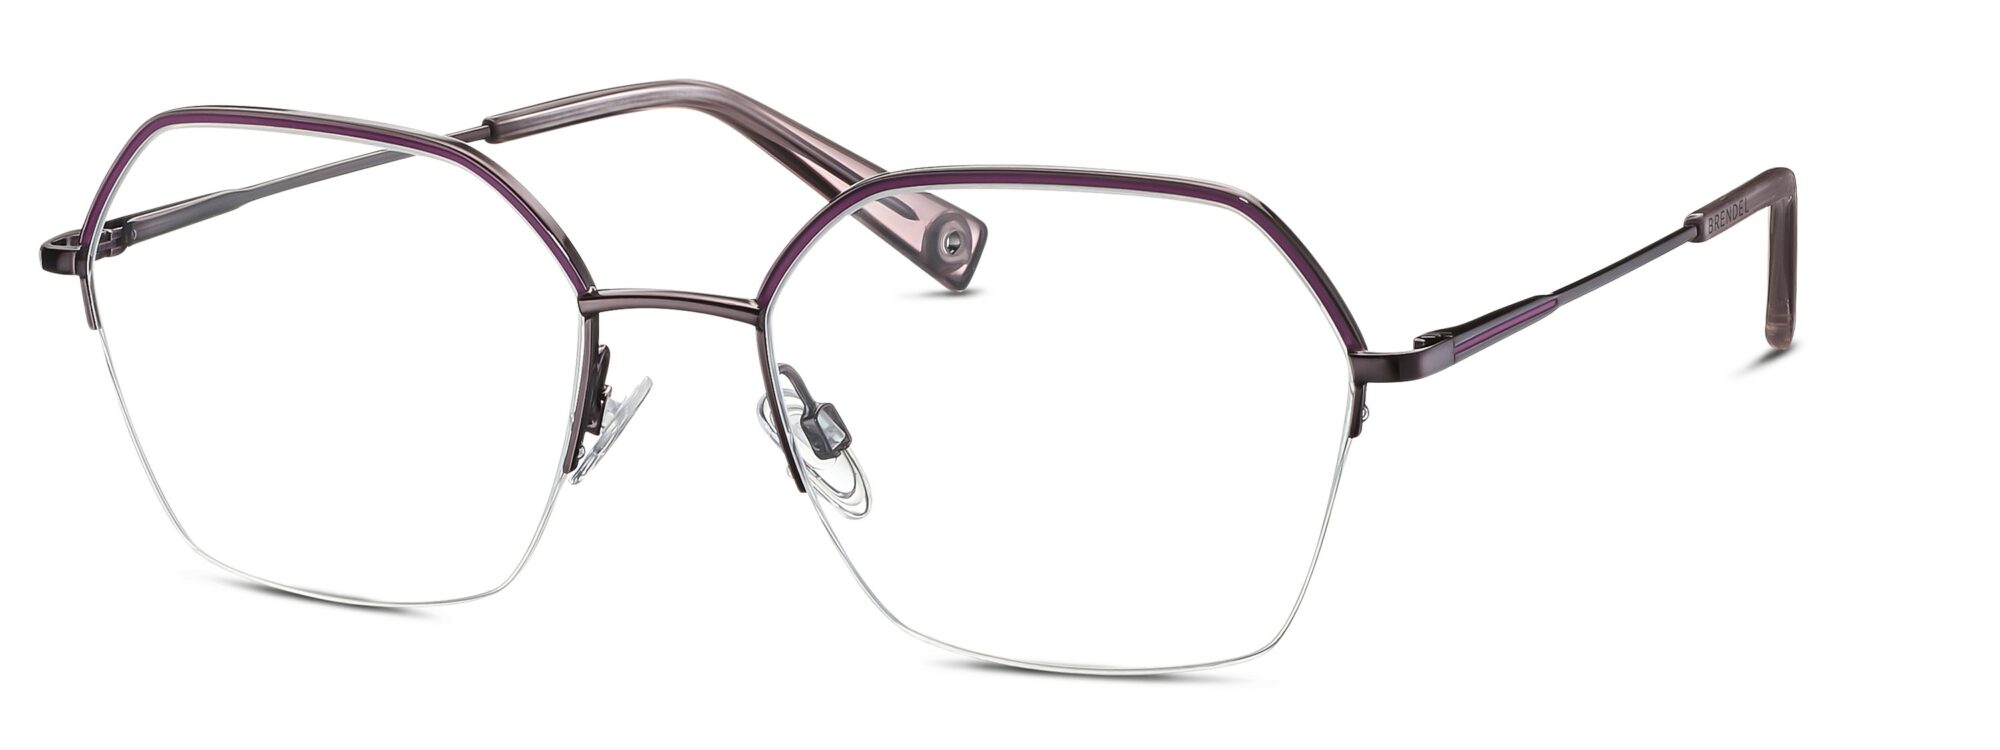 BRENDEL eyewear - 902357-35